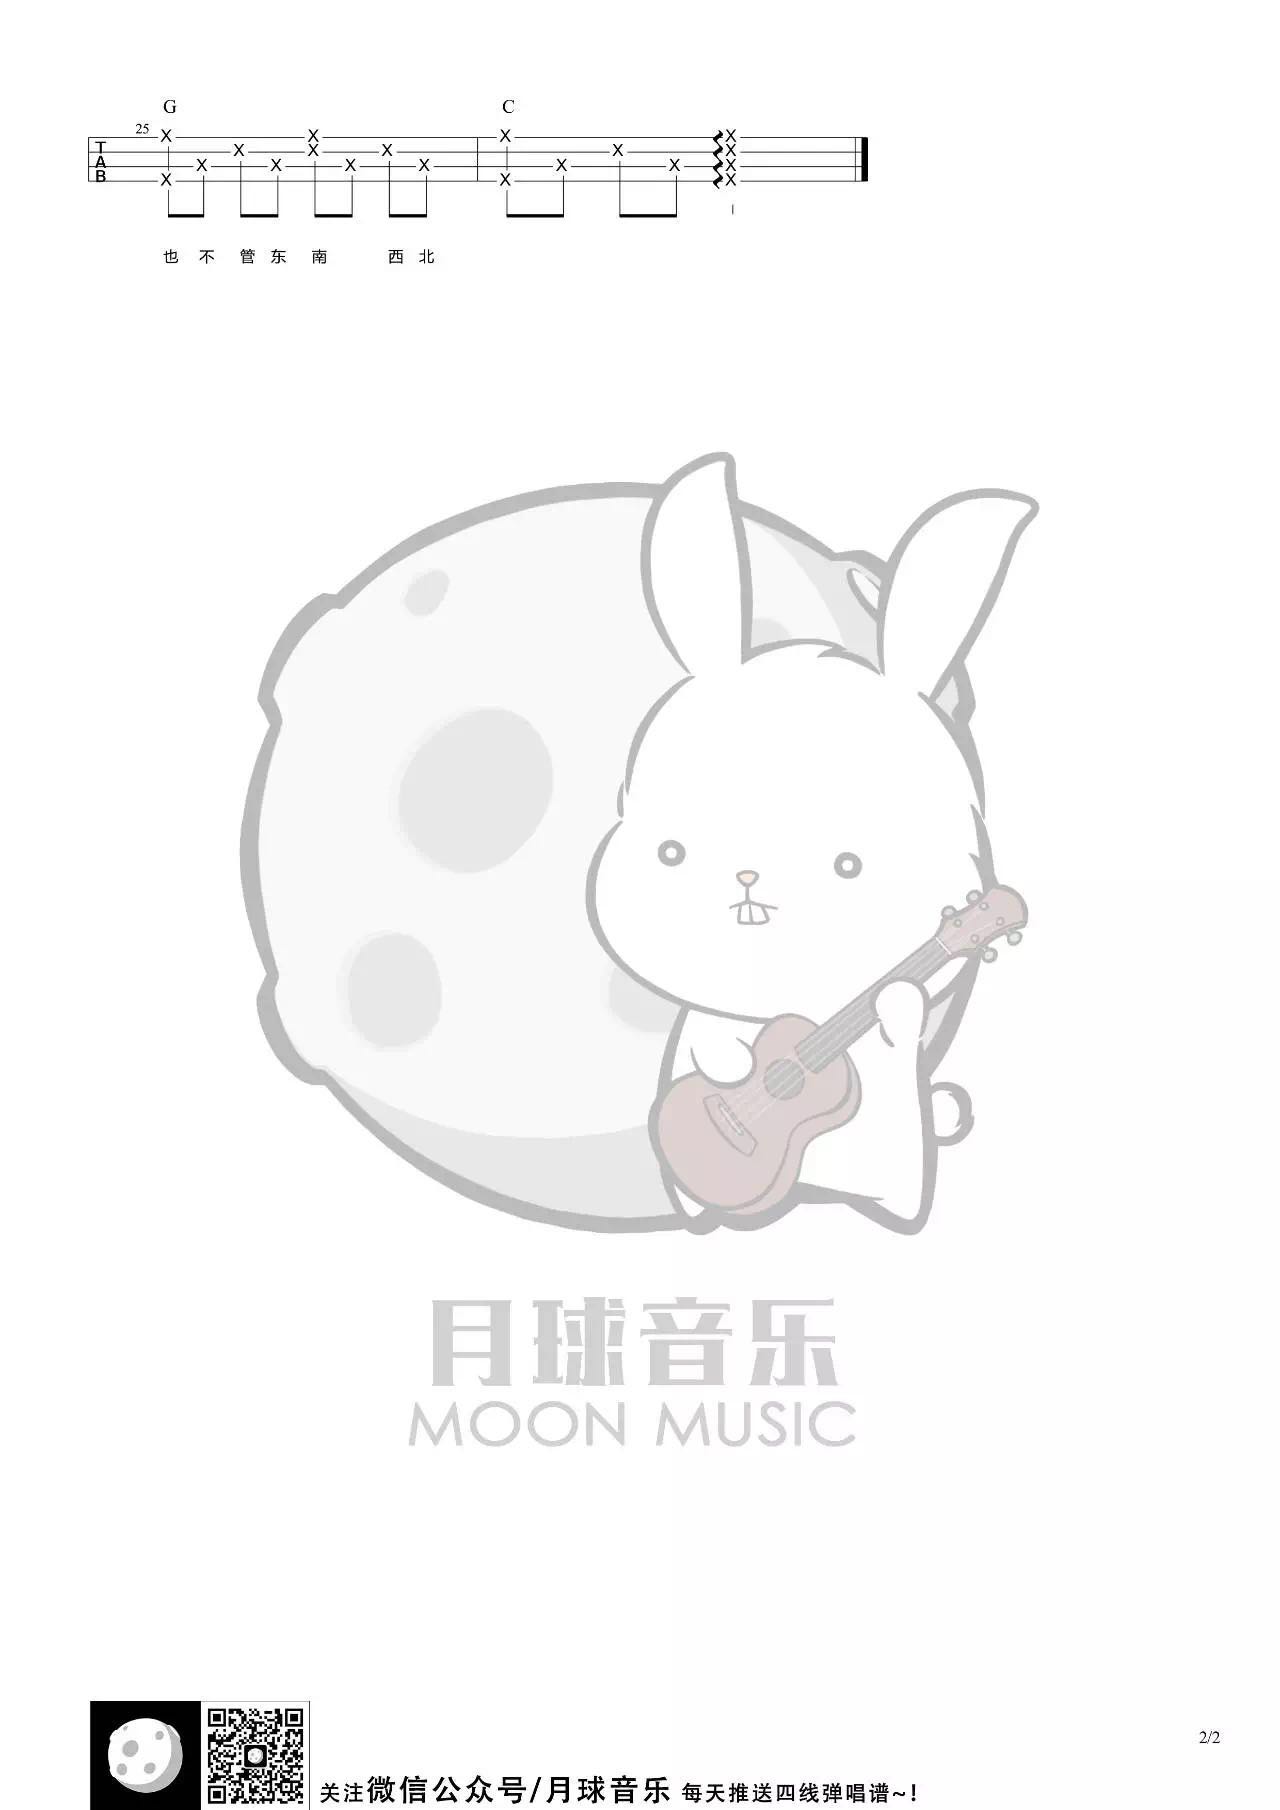 郑伊健《虫儿飞》尤克里里谱-Ukulele Music Score